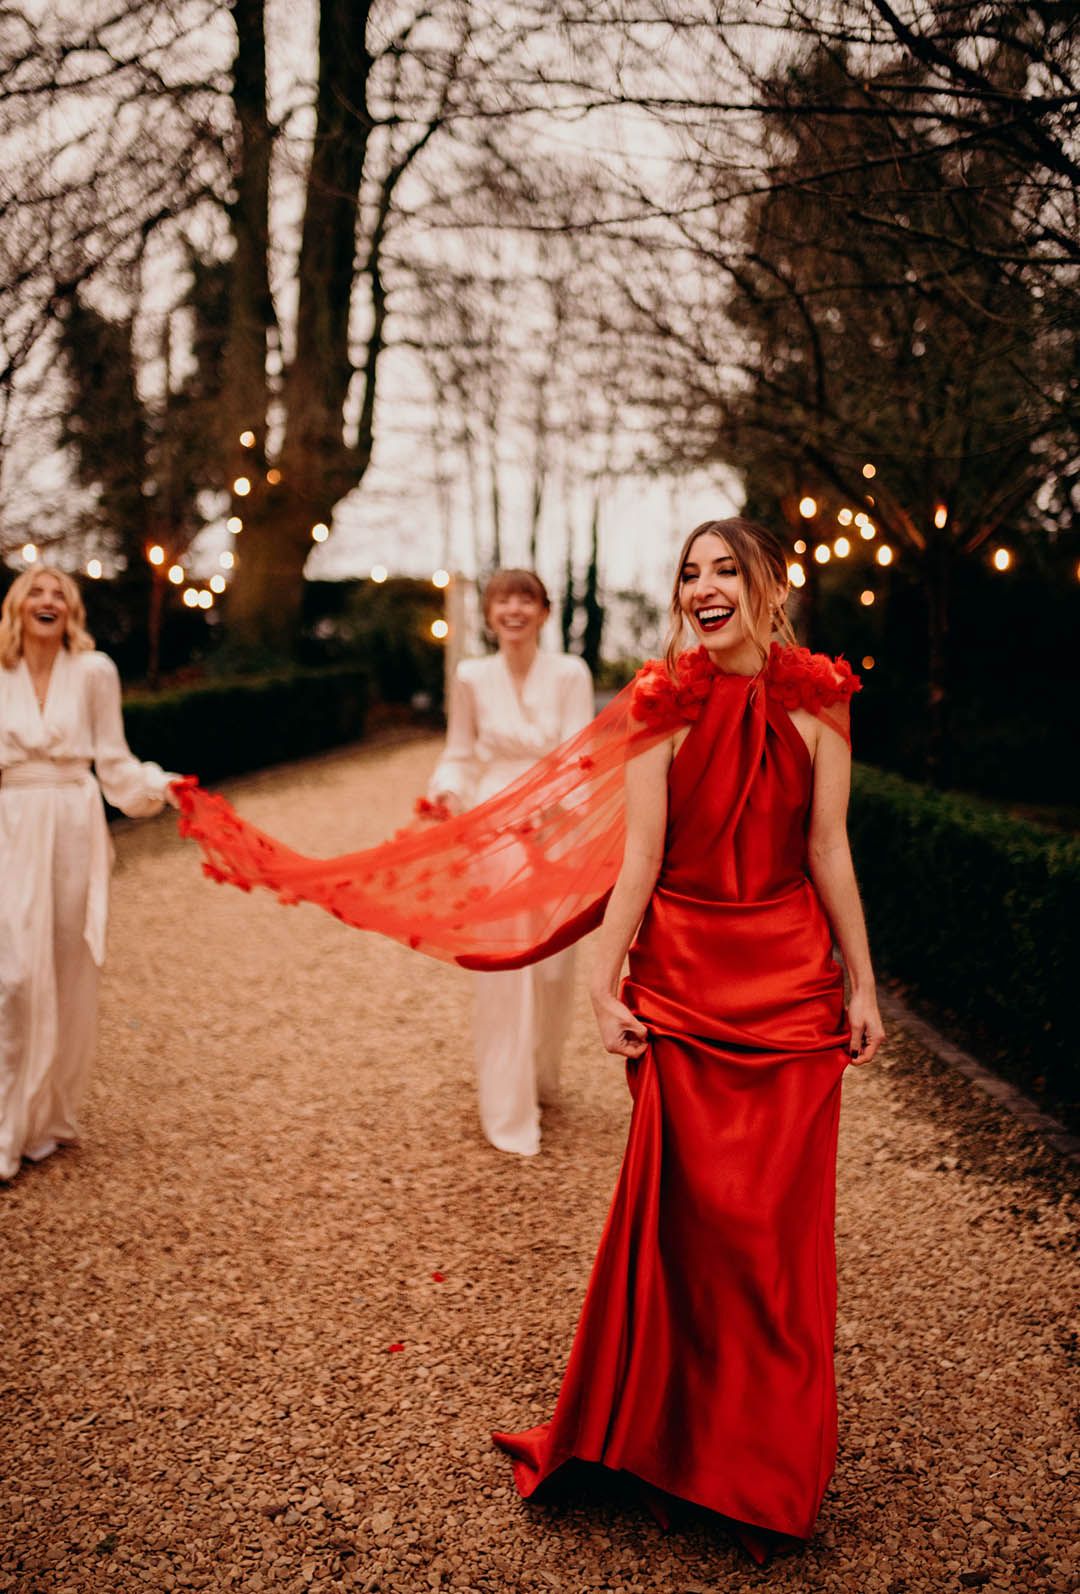 ارتداء فستان زفاف أحمر مع كيب في حفل زفاف شتوي احتفالي